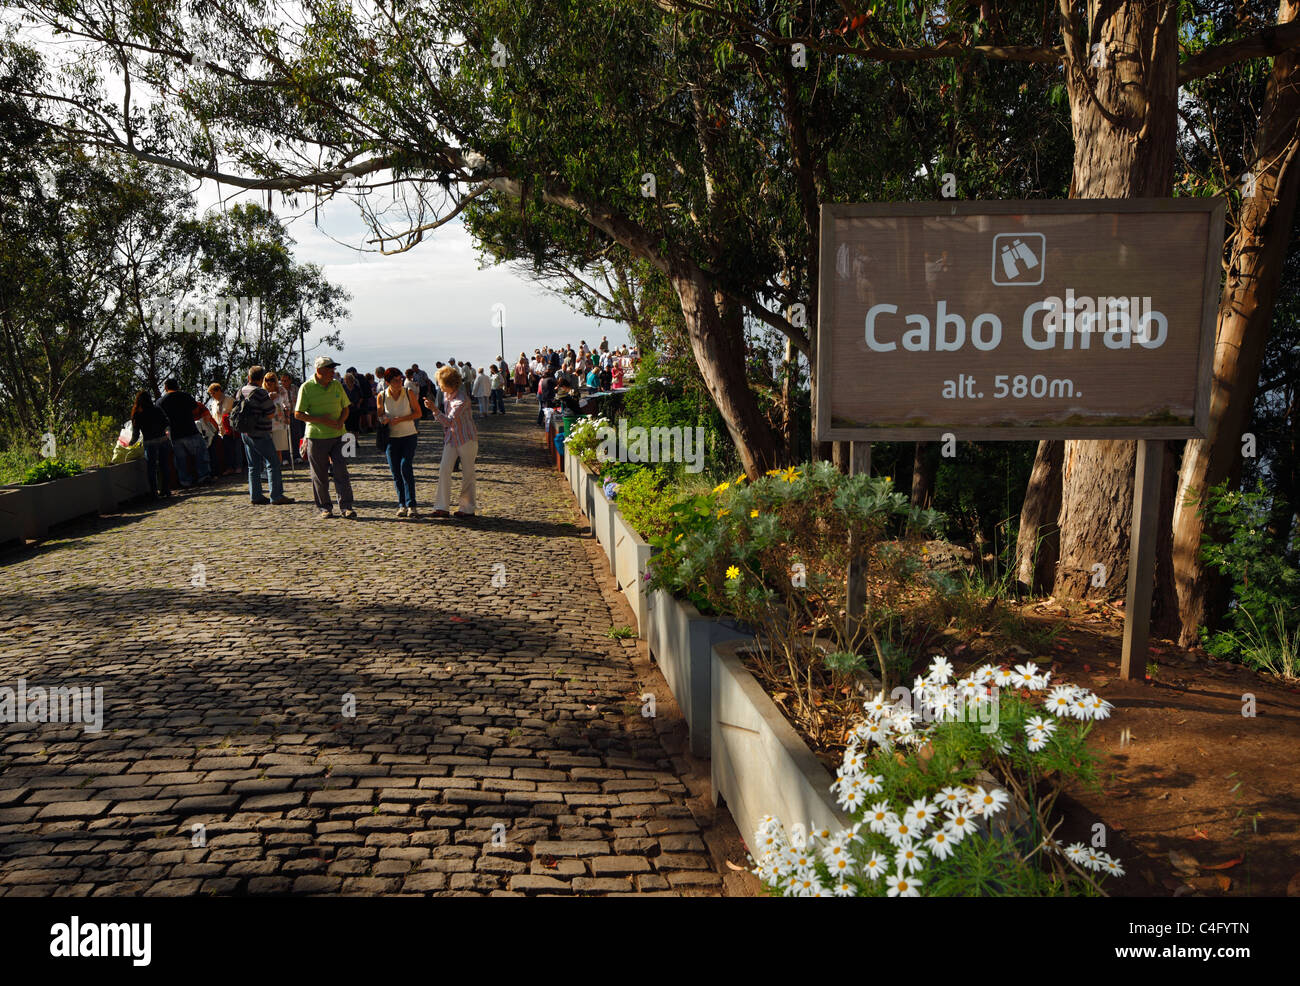 Les touristes à Cabo Girao, Madère, à 580m de la deuxième plus haute falaise dans l'UE. Banque D'Images